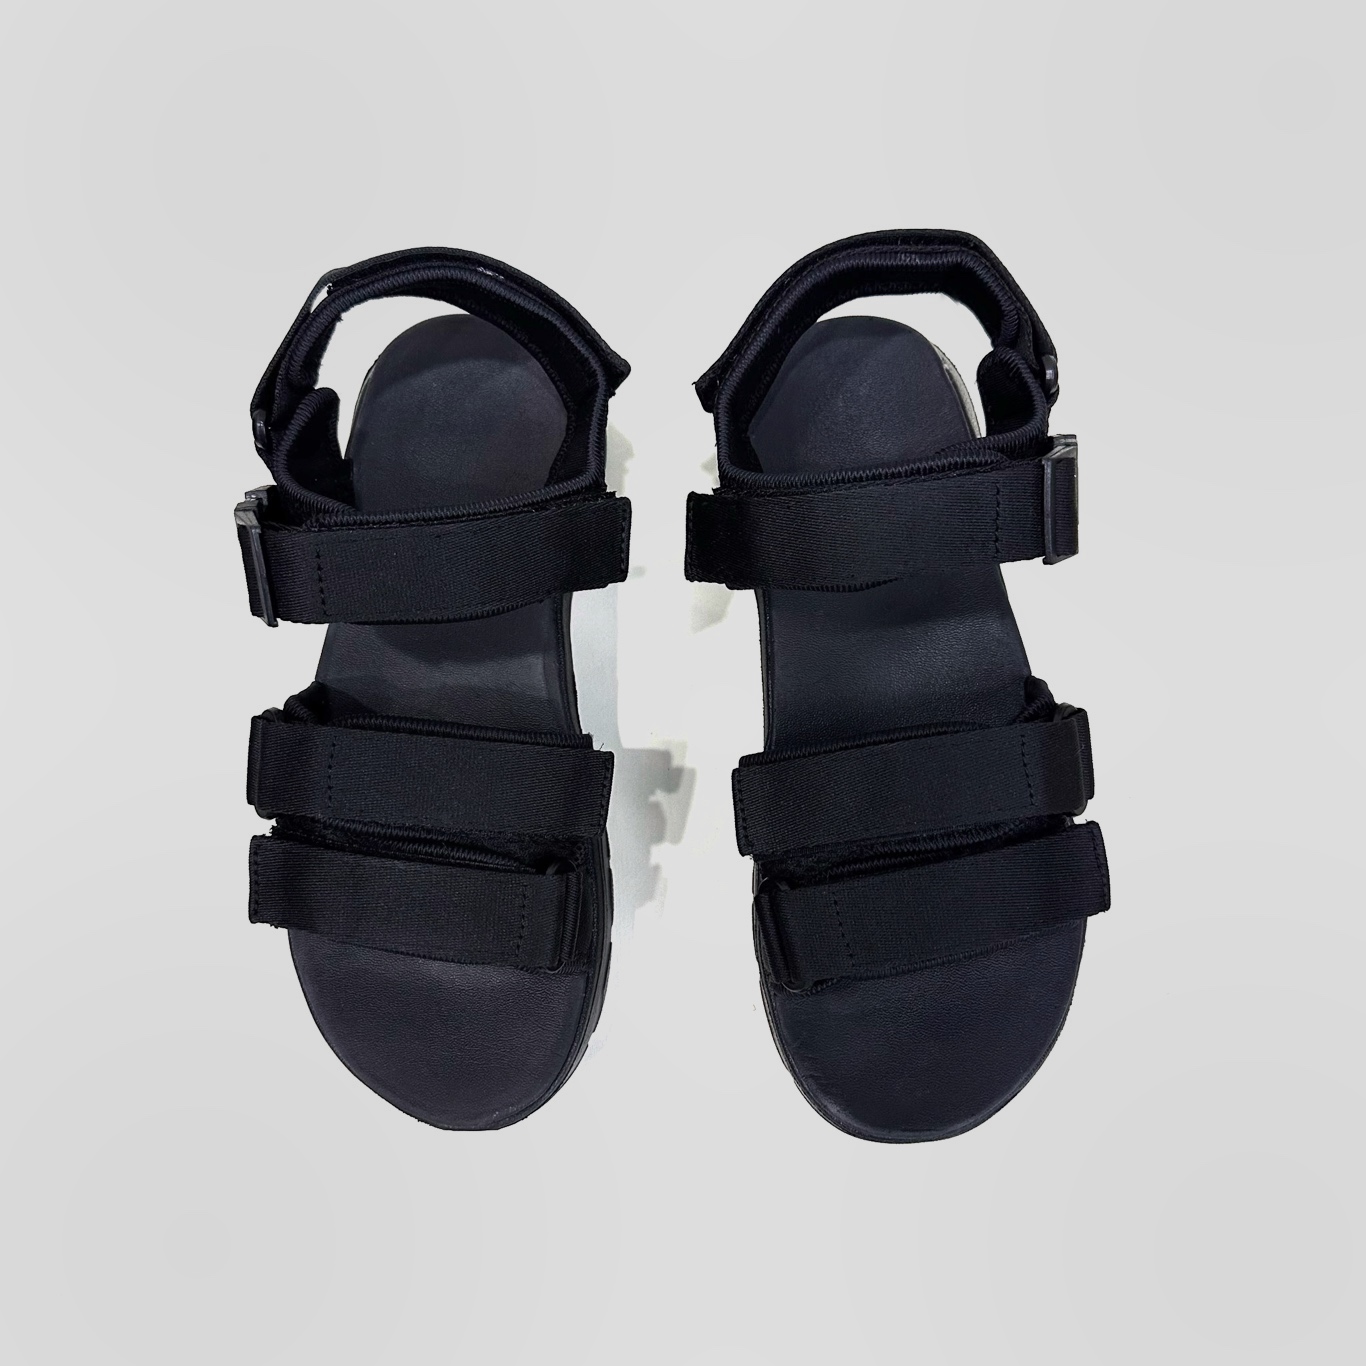 Giày Sandal Nam Nữ Unisex The BiLy Quai Ngang Dây Dù Đế IP Siêu Êm Nhẹ Màu Đen-BL05